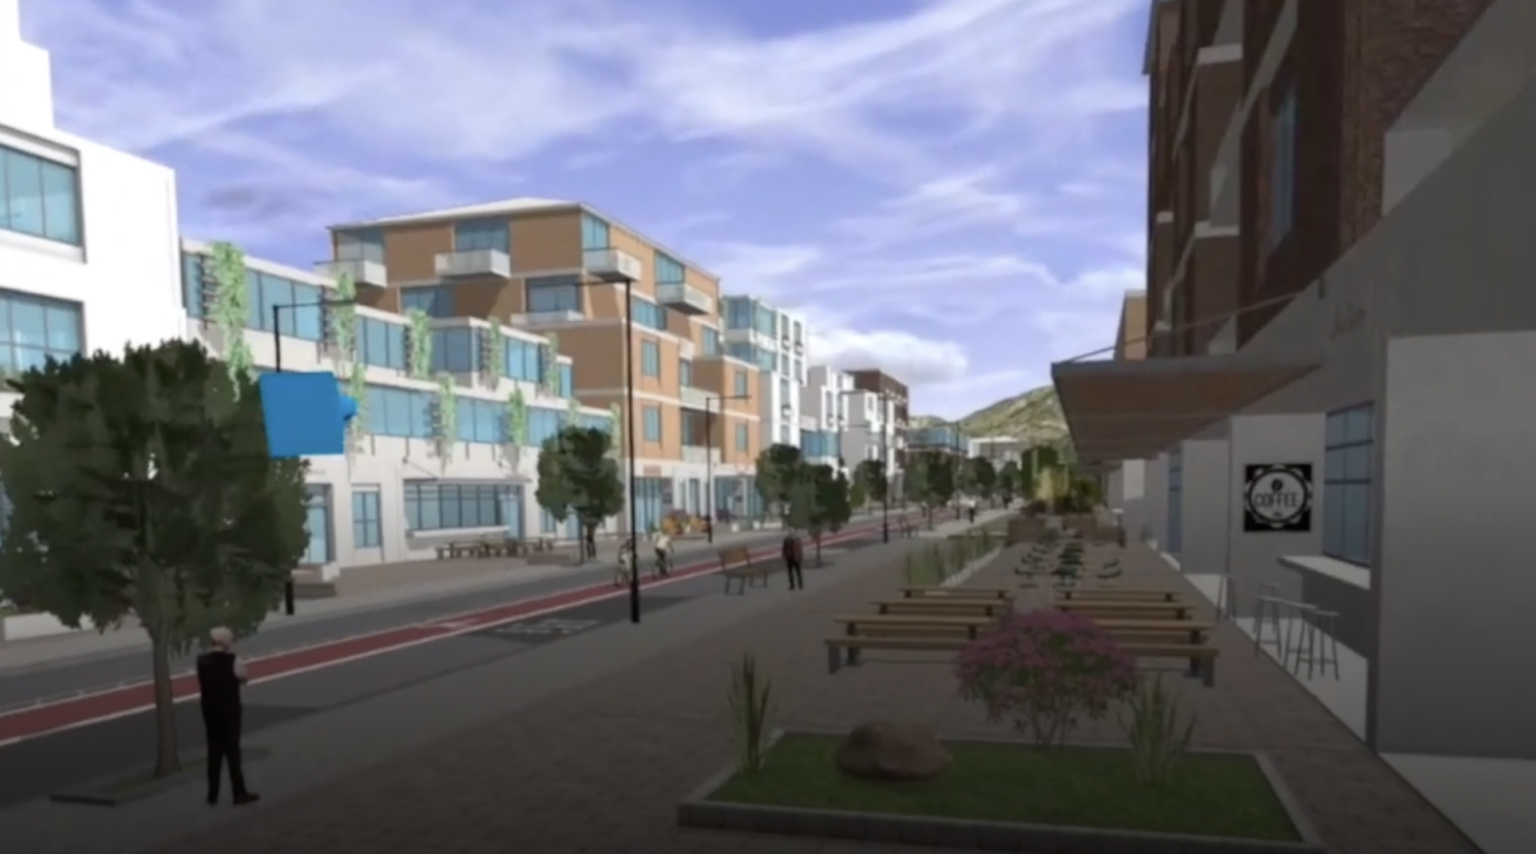 Scena 3D di un quartiere cittadino con edifici, una strada e alberi verdi visualizzata tramite un visore VR